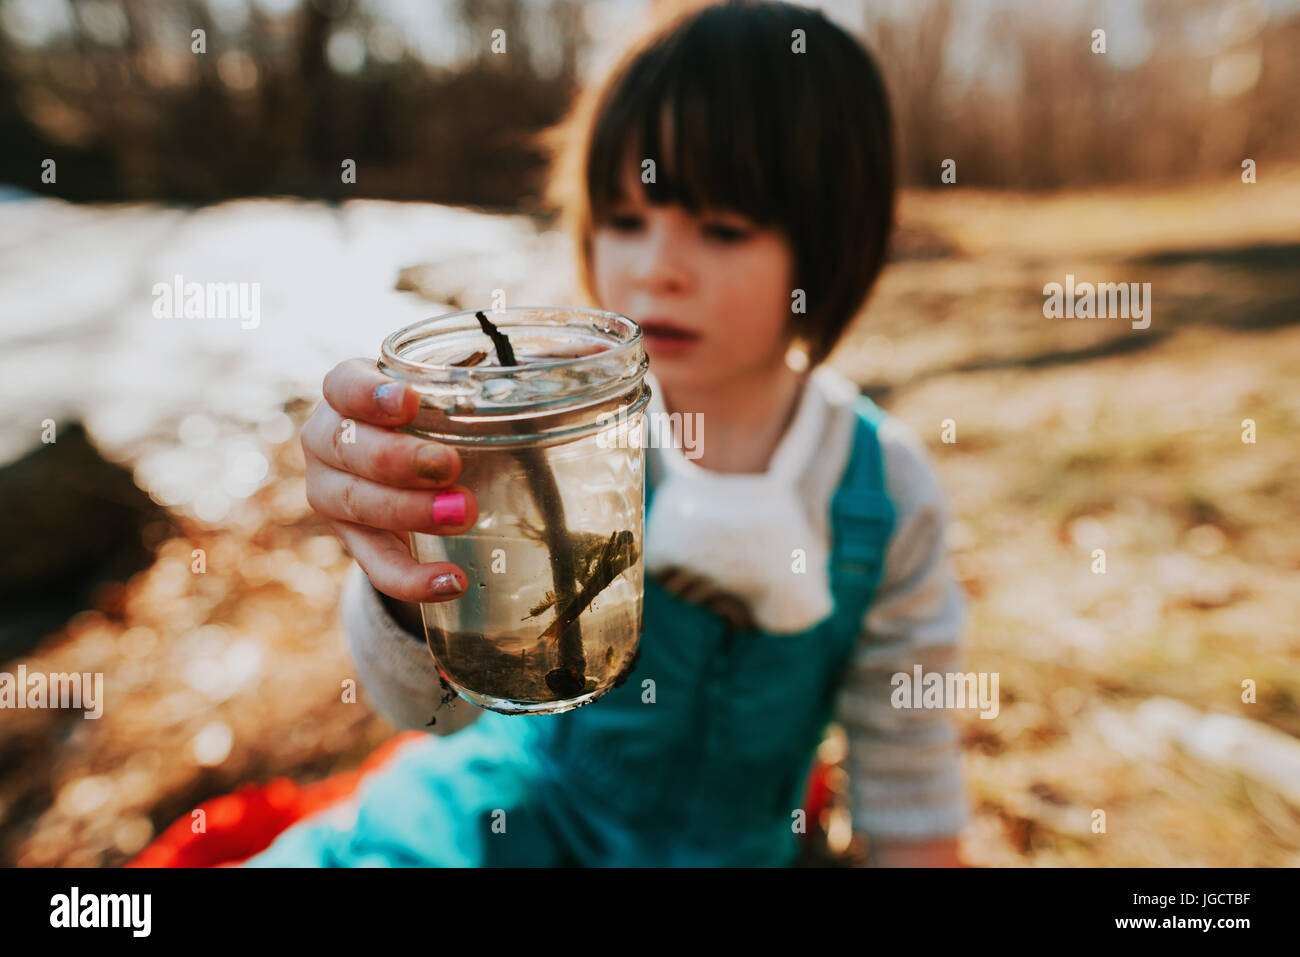 Girl holding un pot avec de l'eau bugs Banque D'Images